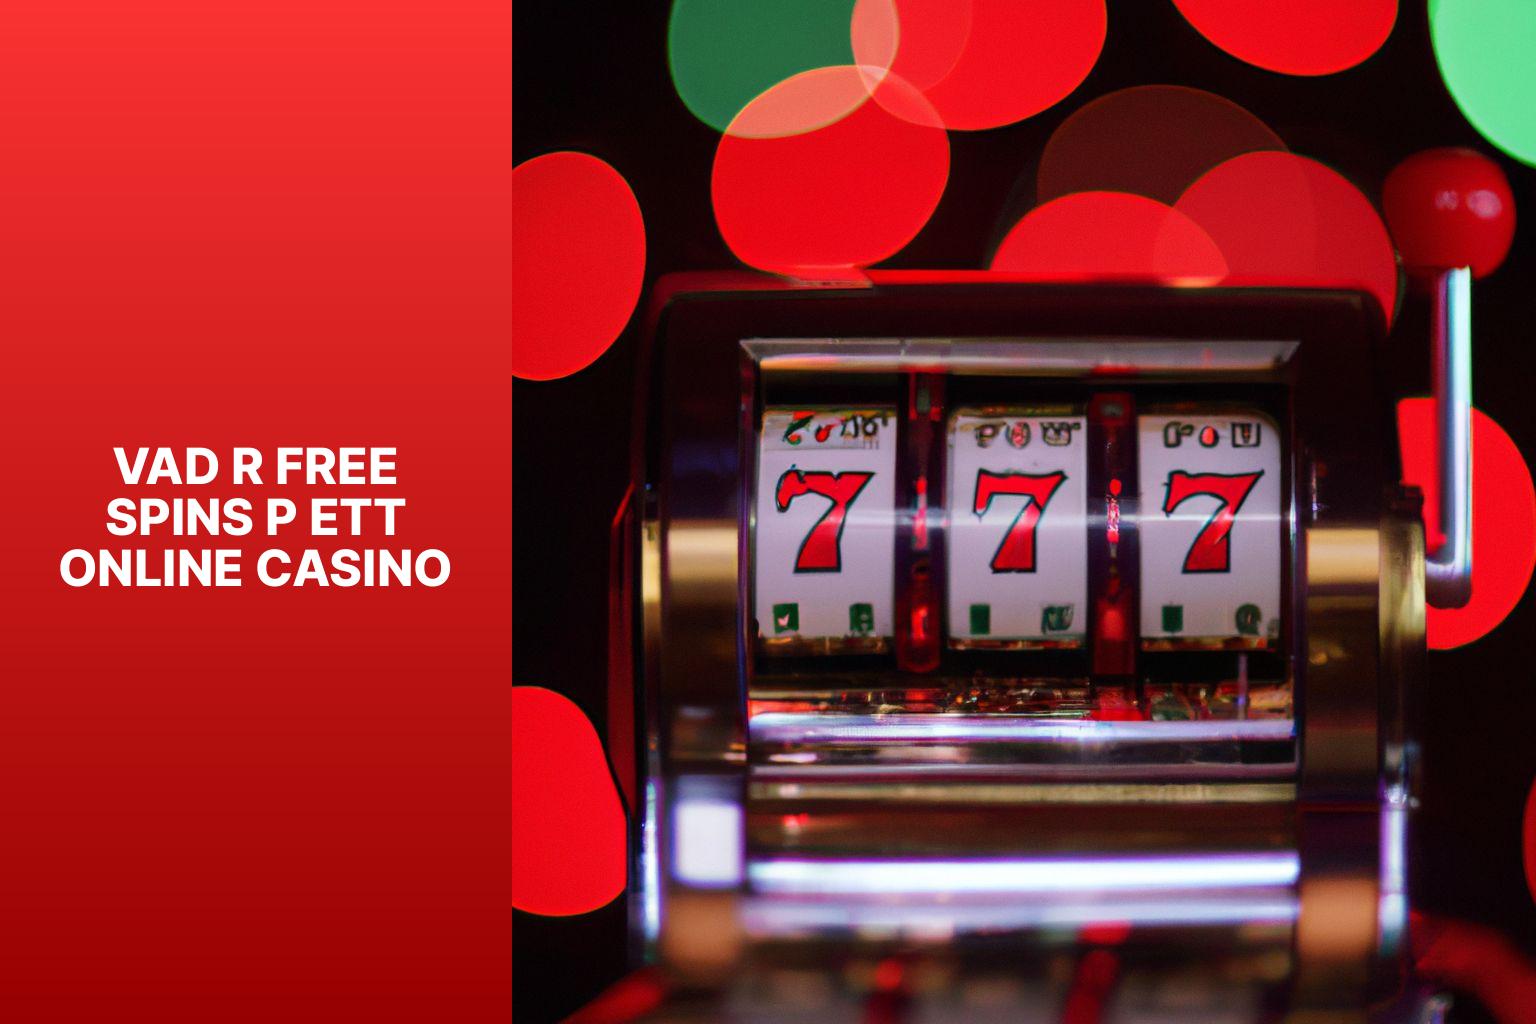 Vad r free spins p ett online casino